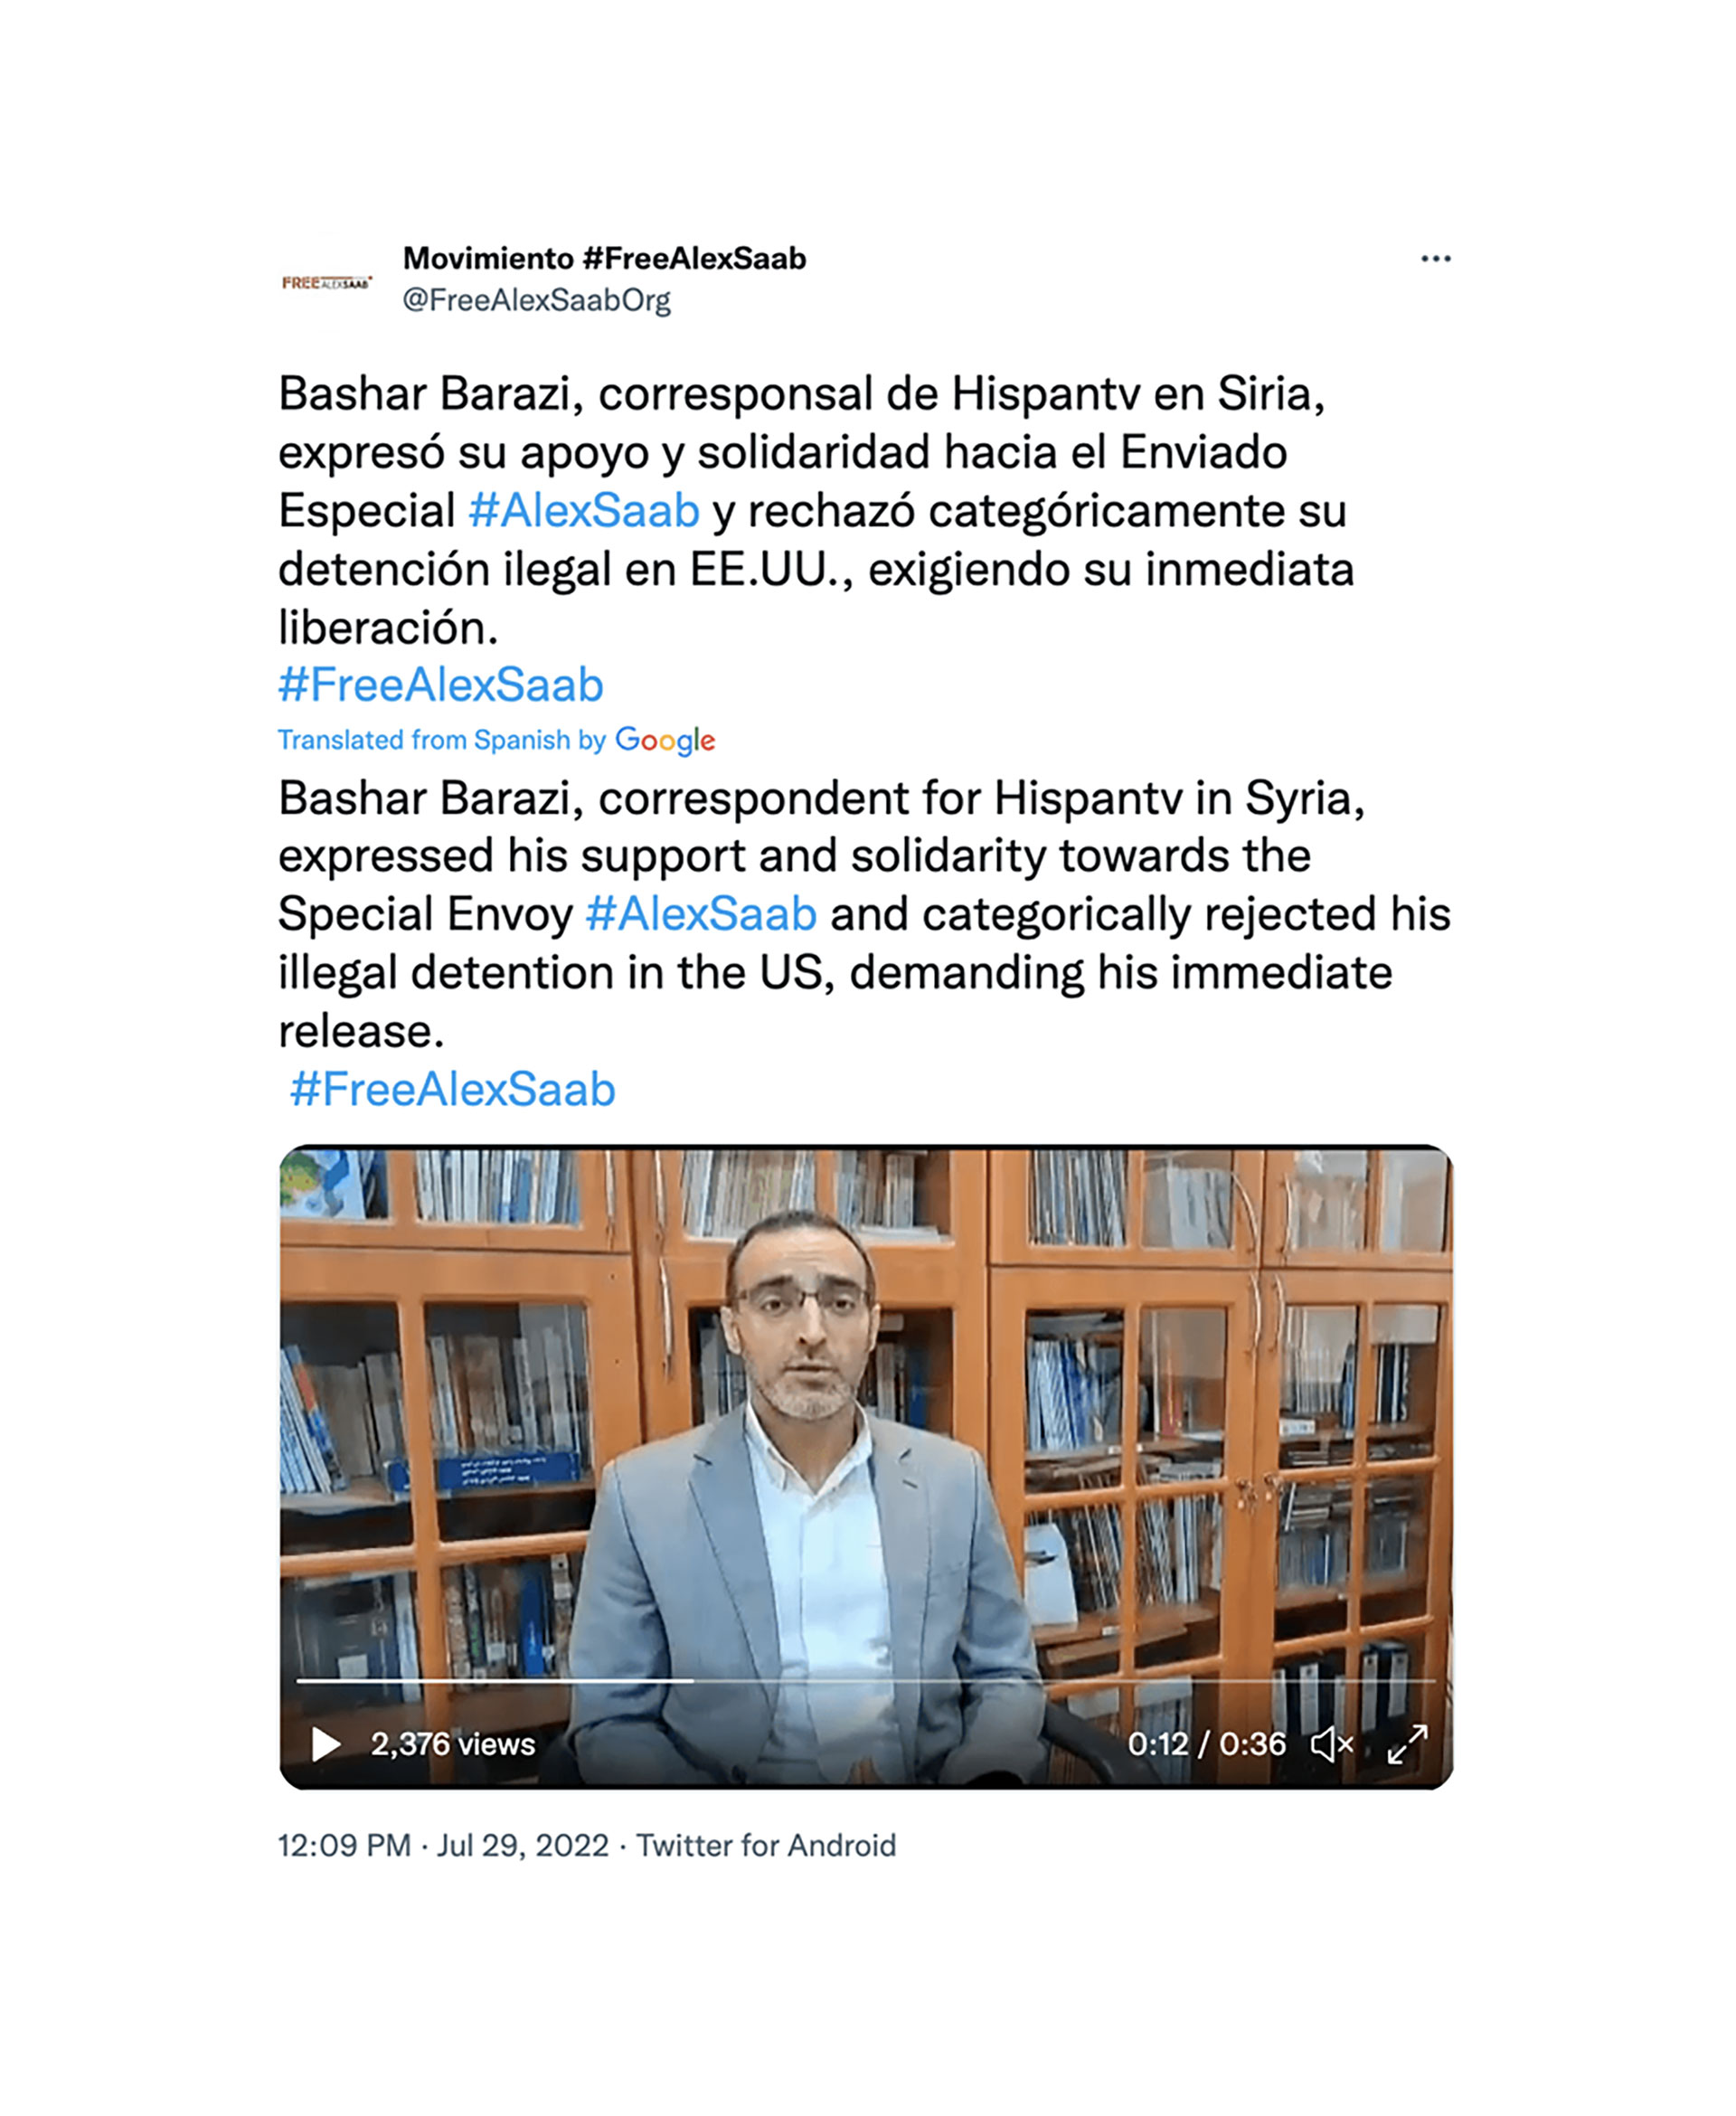 aptura de pantalla de la publicación en las redes sociales del movimiento "Free Alex Saab" en la que aparece el periodista de HispanTV Bashar Barazi  (Recorded Future)